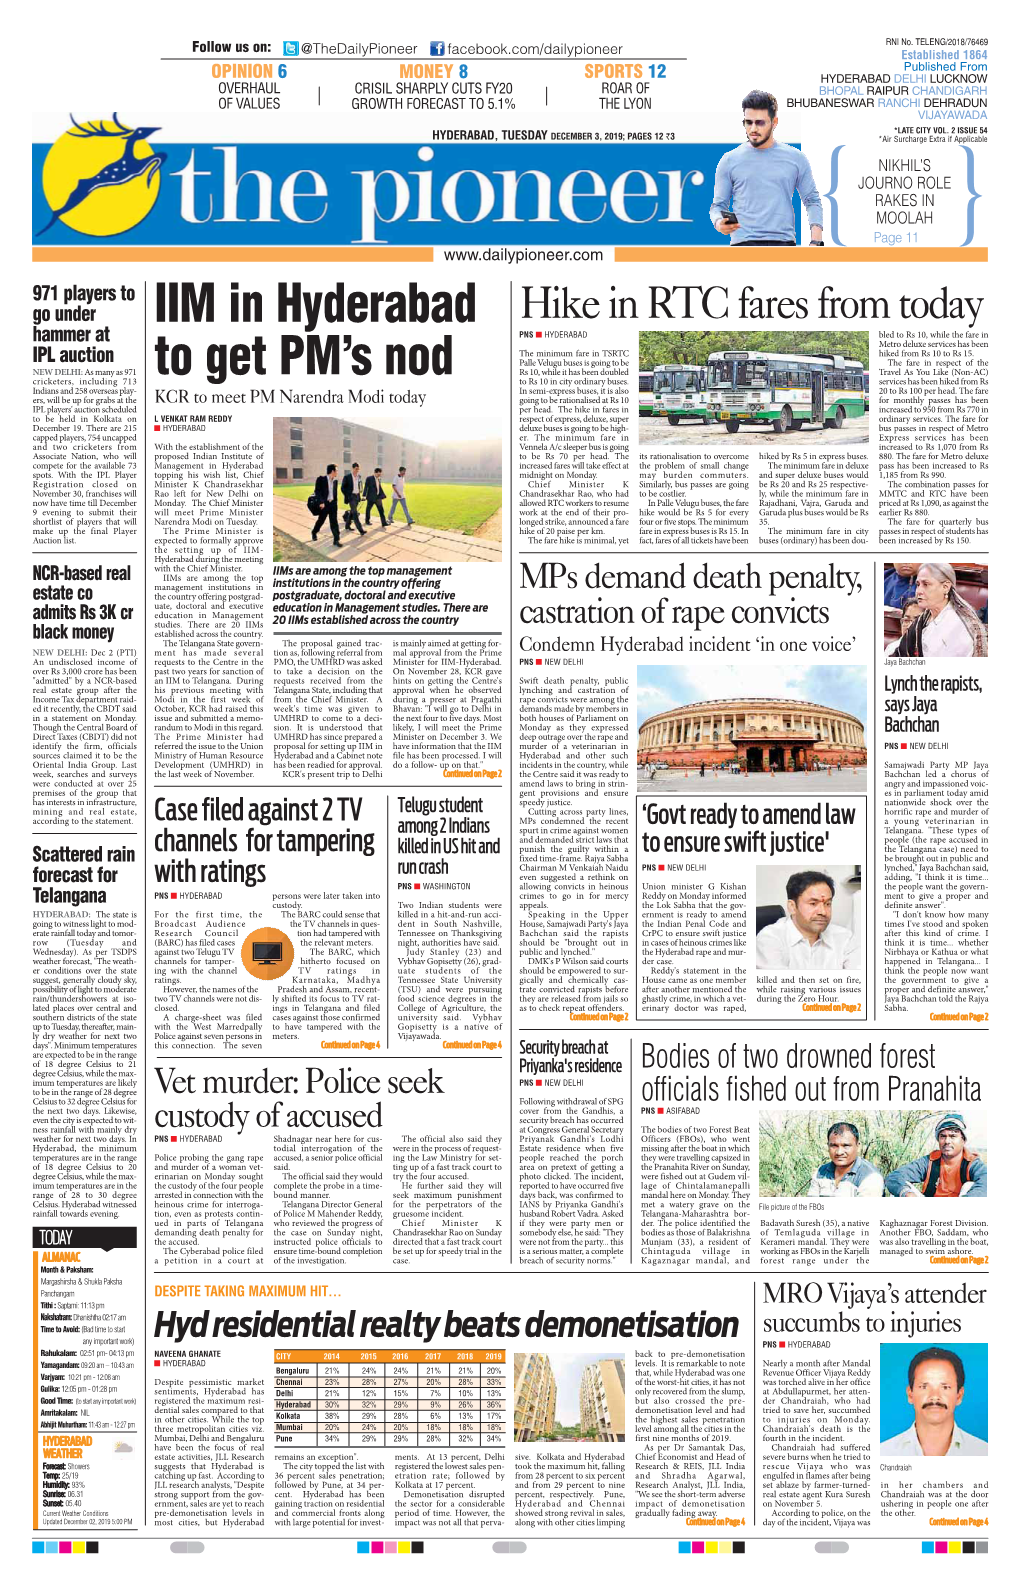 IIM in Hyderabad to Get PM's